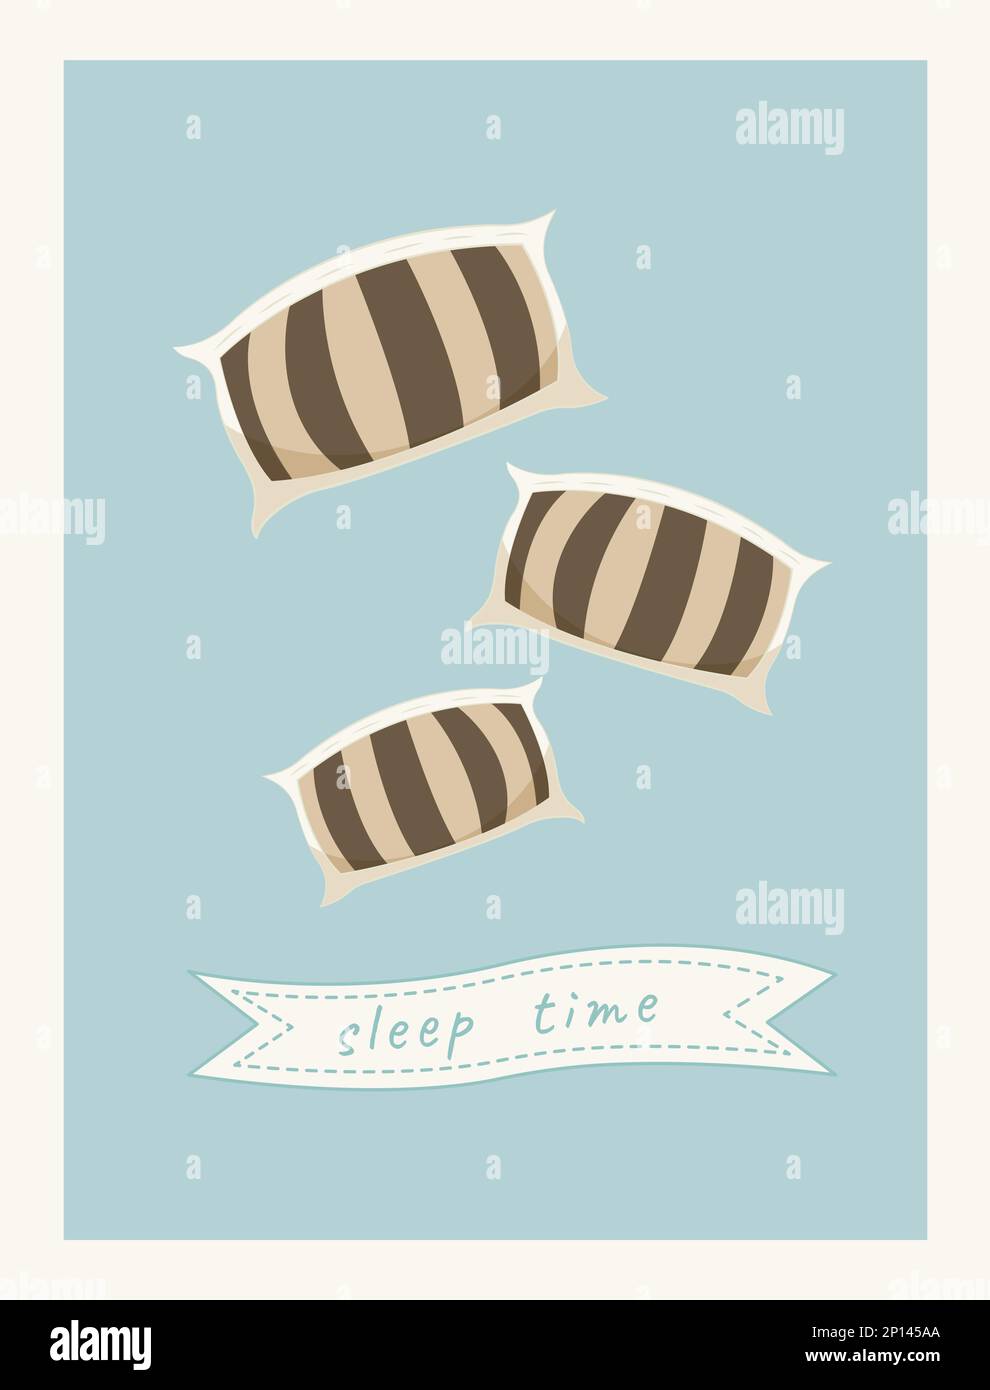 Die Kissen fliegen in die Luft. Kissen im Schlafzimmer. Süßes und gemütliches Poster für ein Kinderzimmer. Druck für Geschenkgutscheine, Waren, Babyprodukte. Logo Stock Vektor